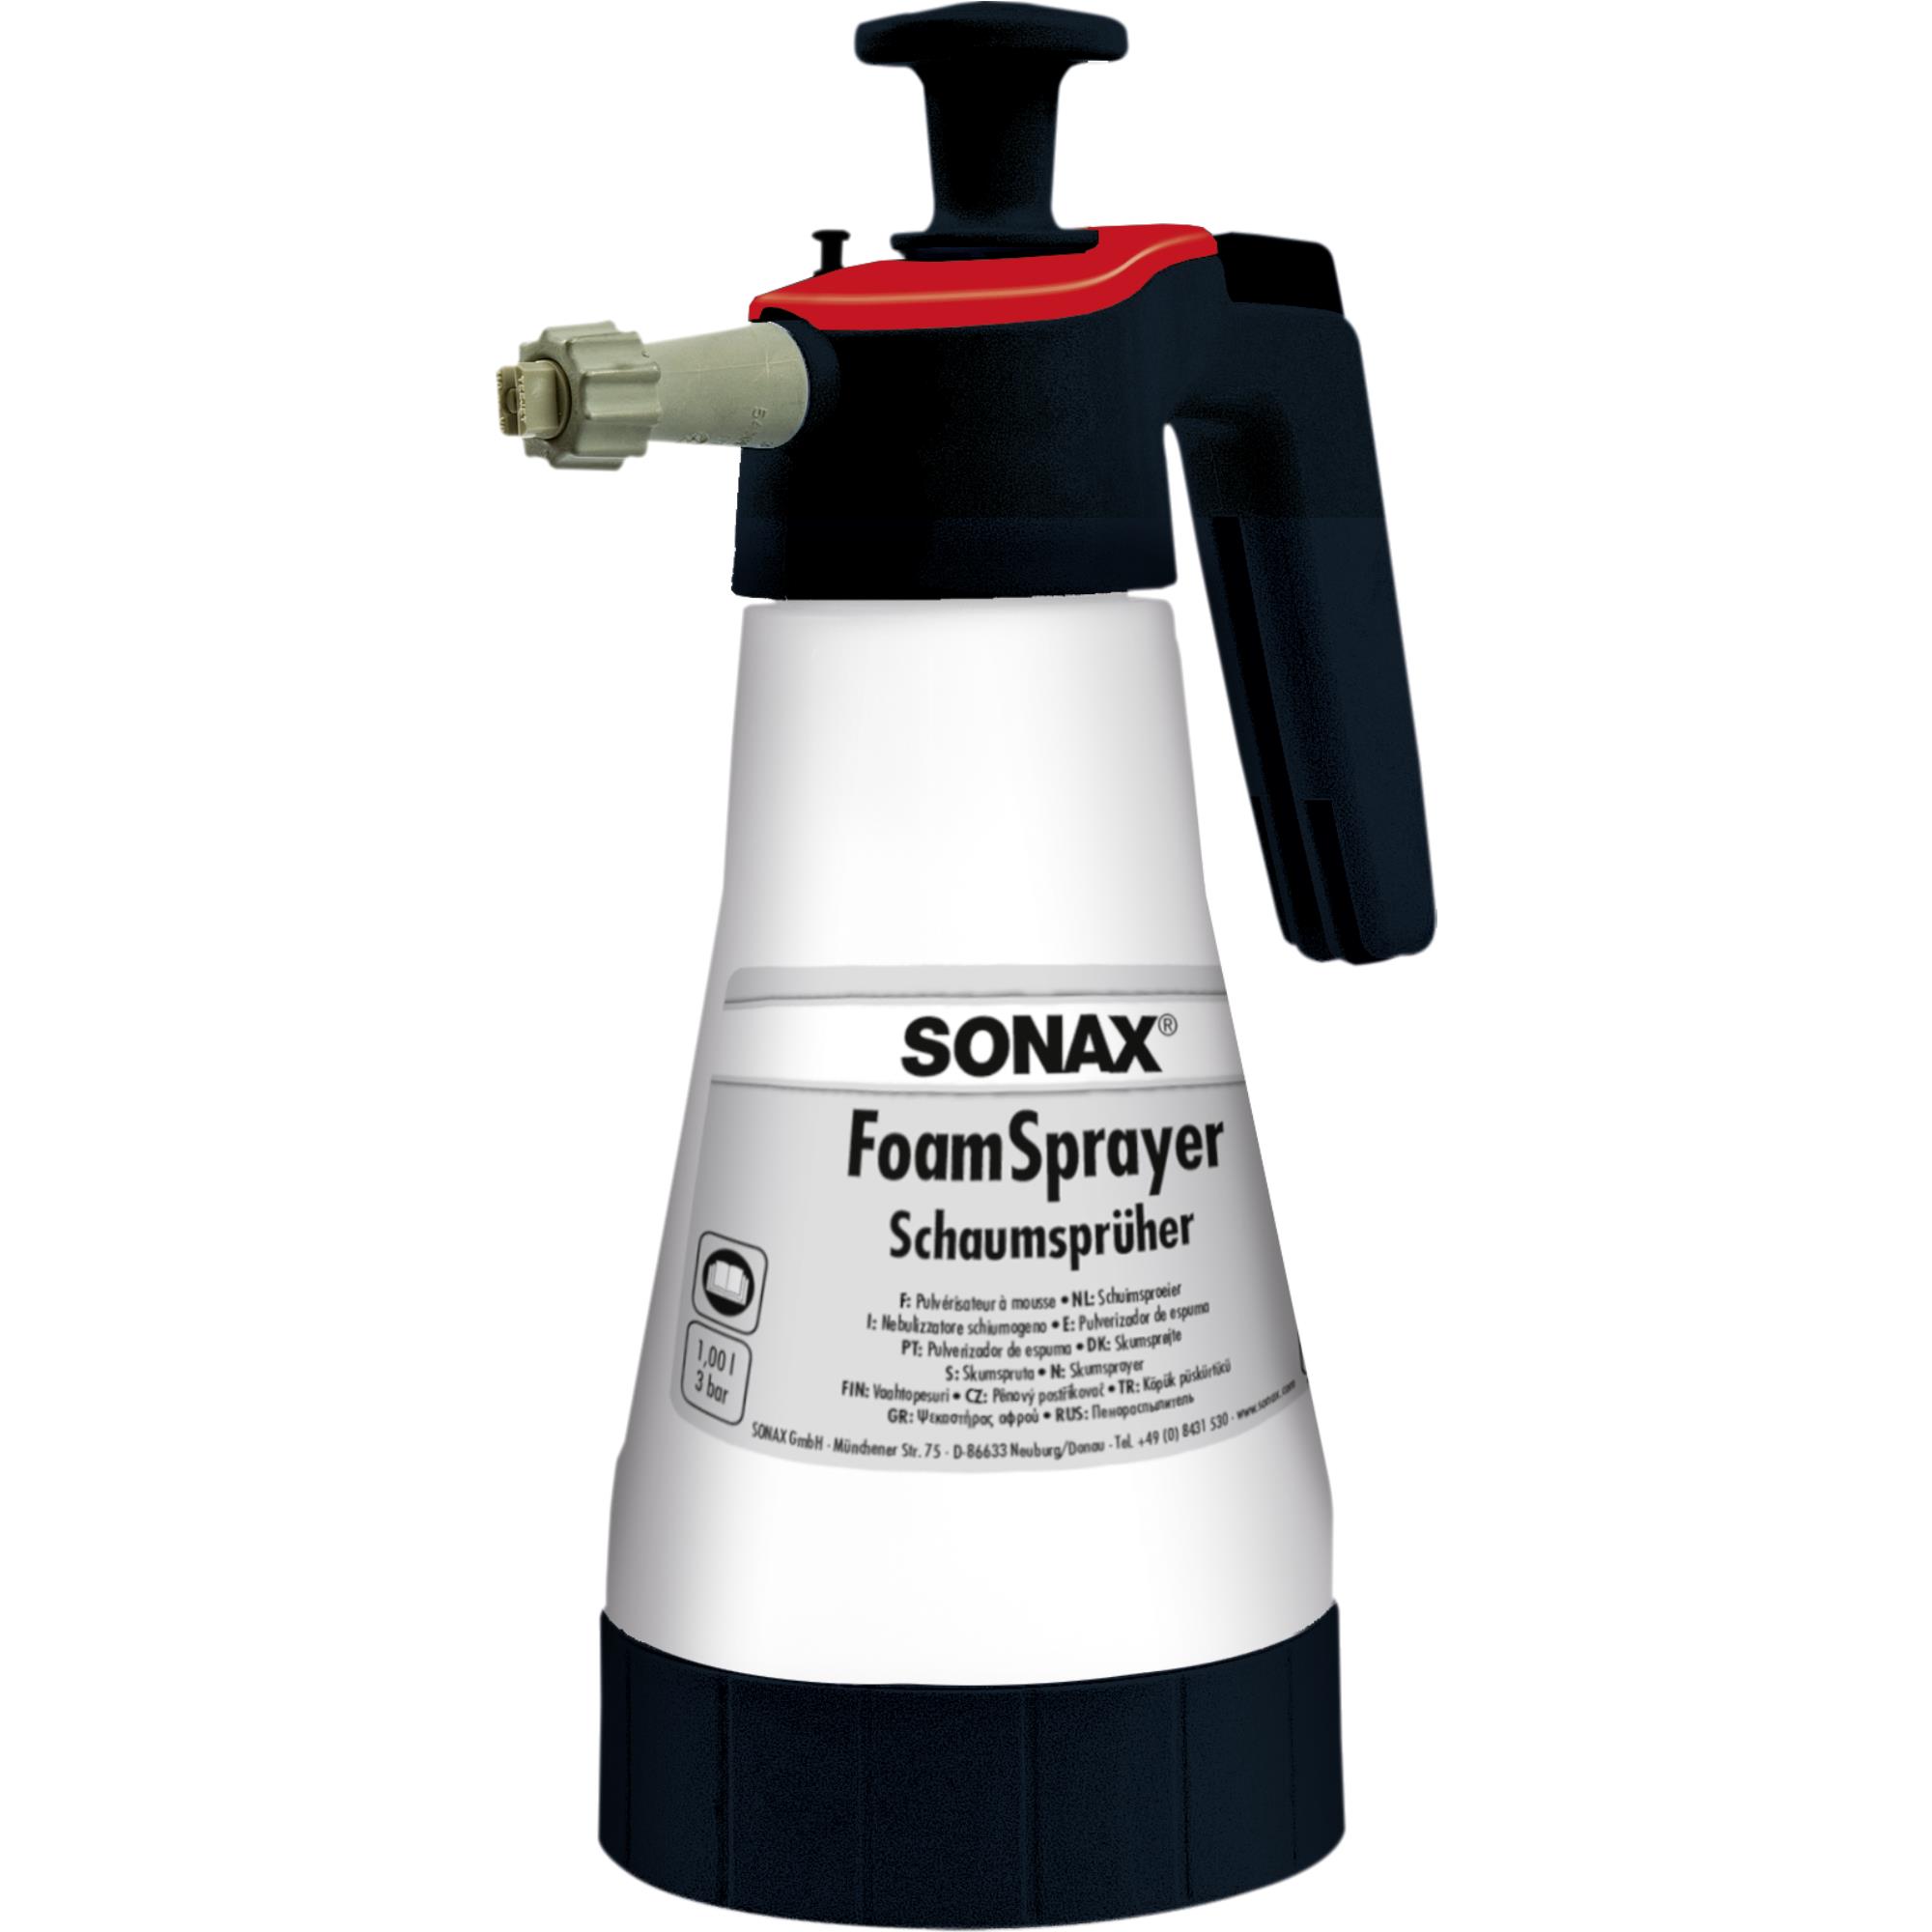 SONAX 04965410  FoamSprayer mit Flachstrahldüse Schaumsprüher 1 Liter